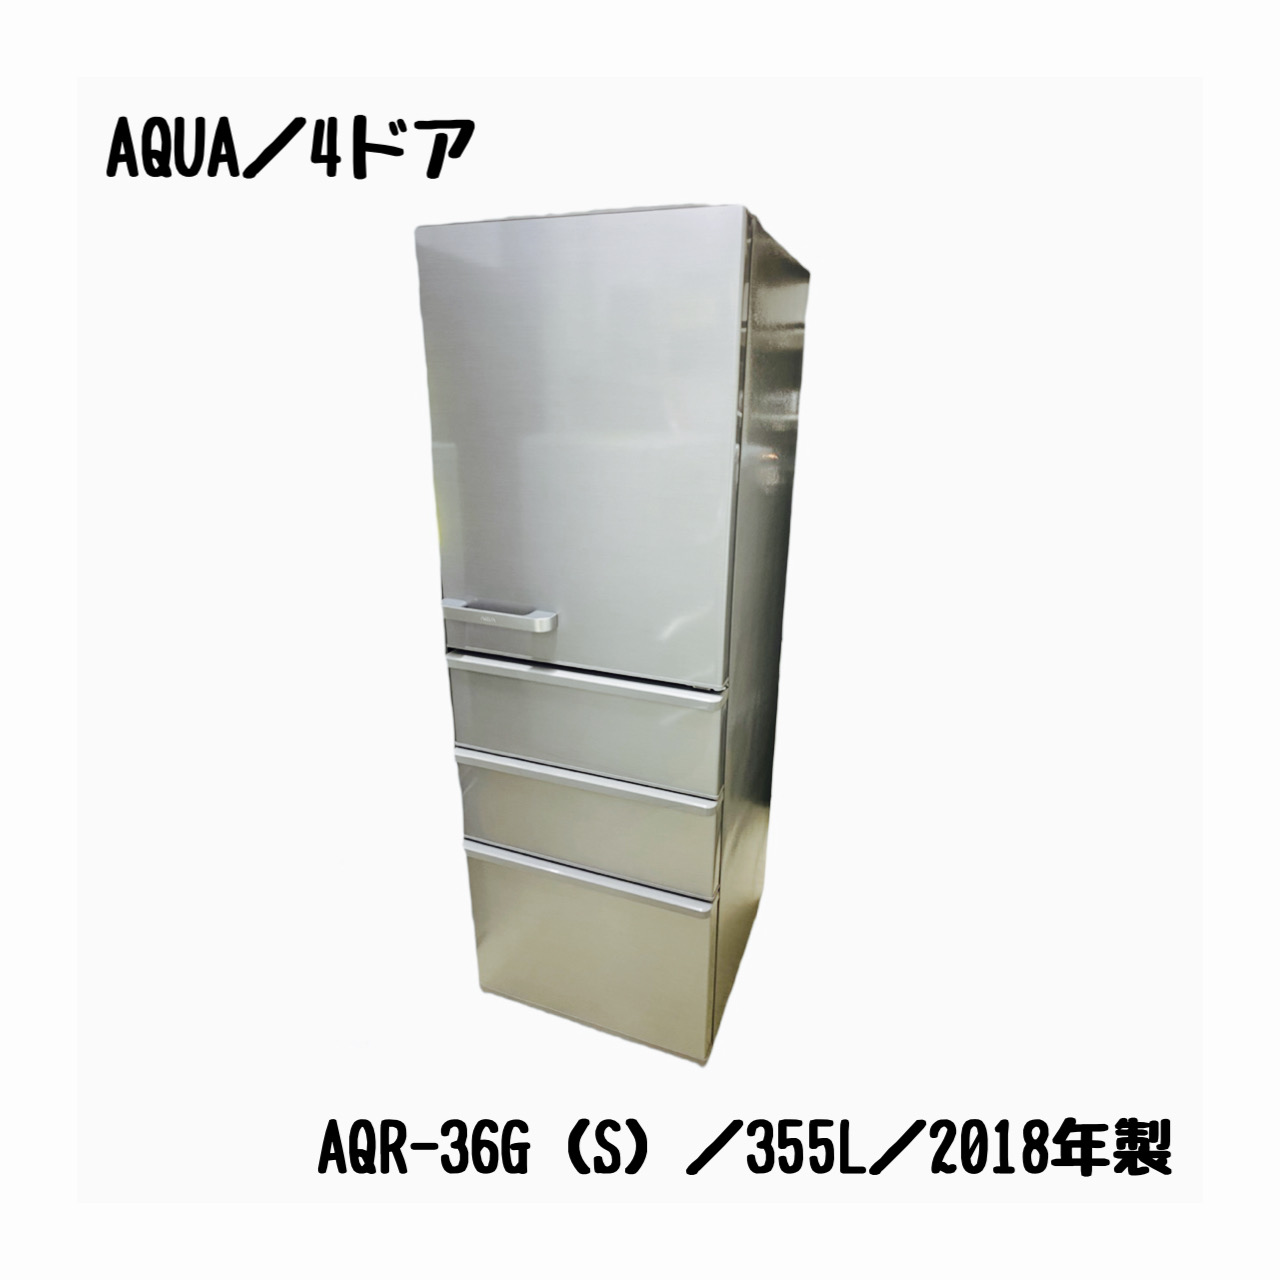 アクア 355L冷蔵庫 2018年製 AQR-36G2【モノ市場東海店】41 - キッチン家電